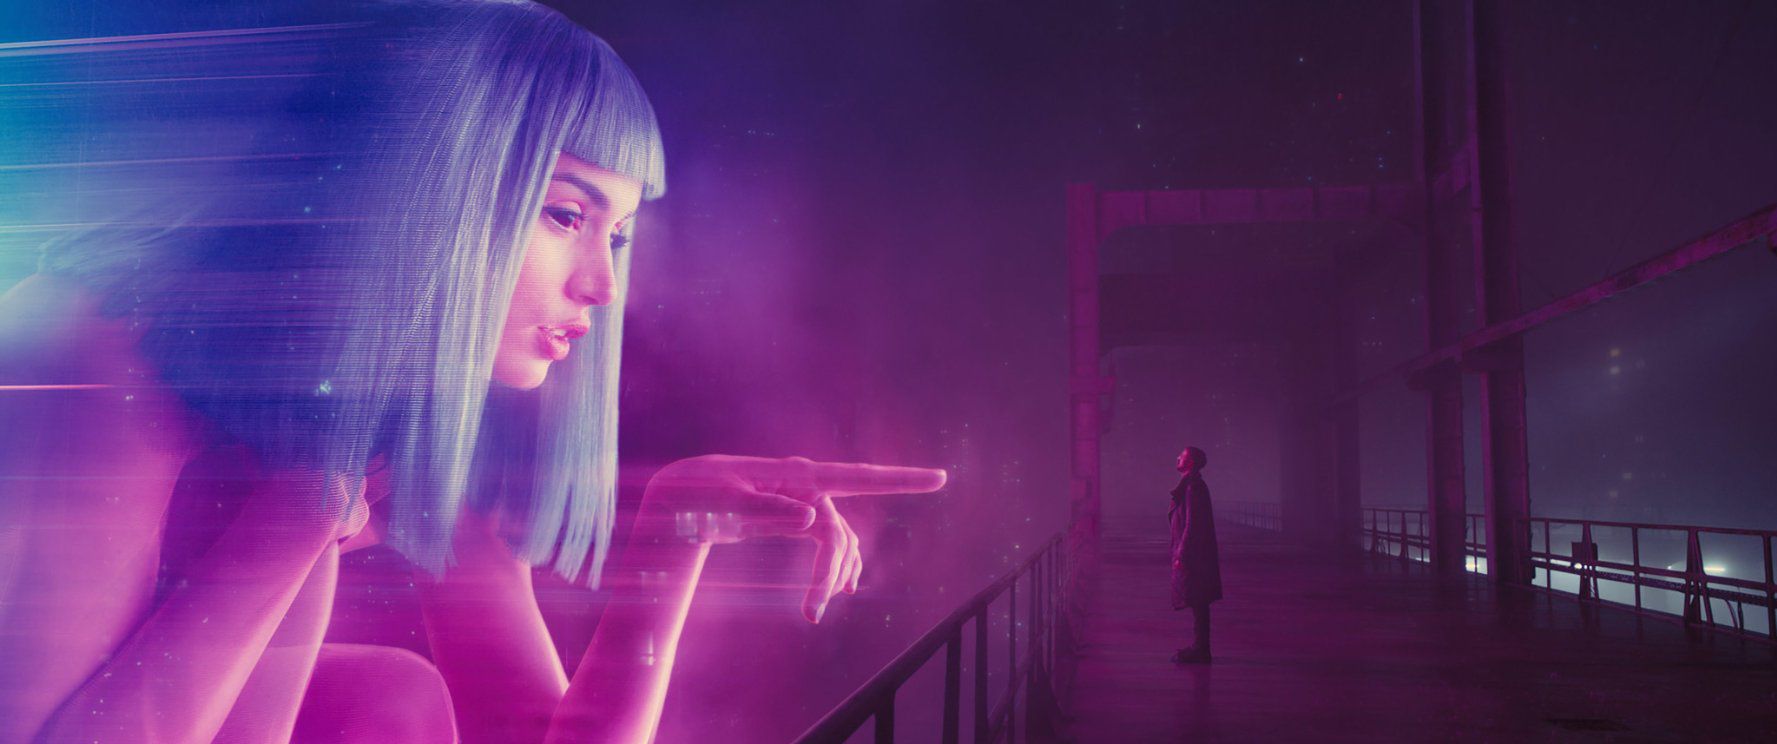 Ana de Armas: Cô đào nóng bỏng của bom tấn "Blade Runner 2049" (9)